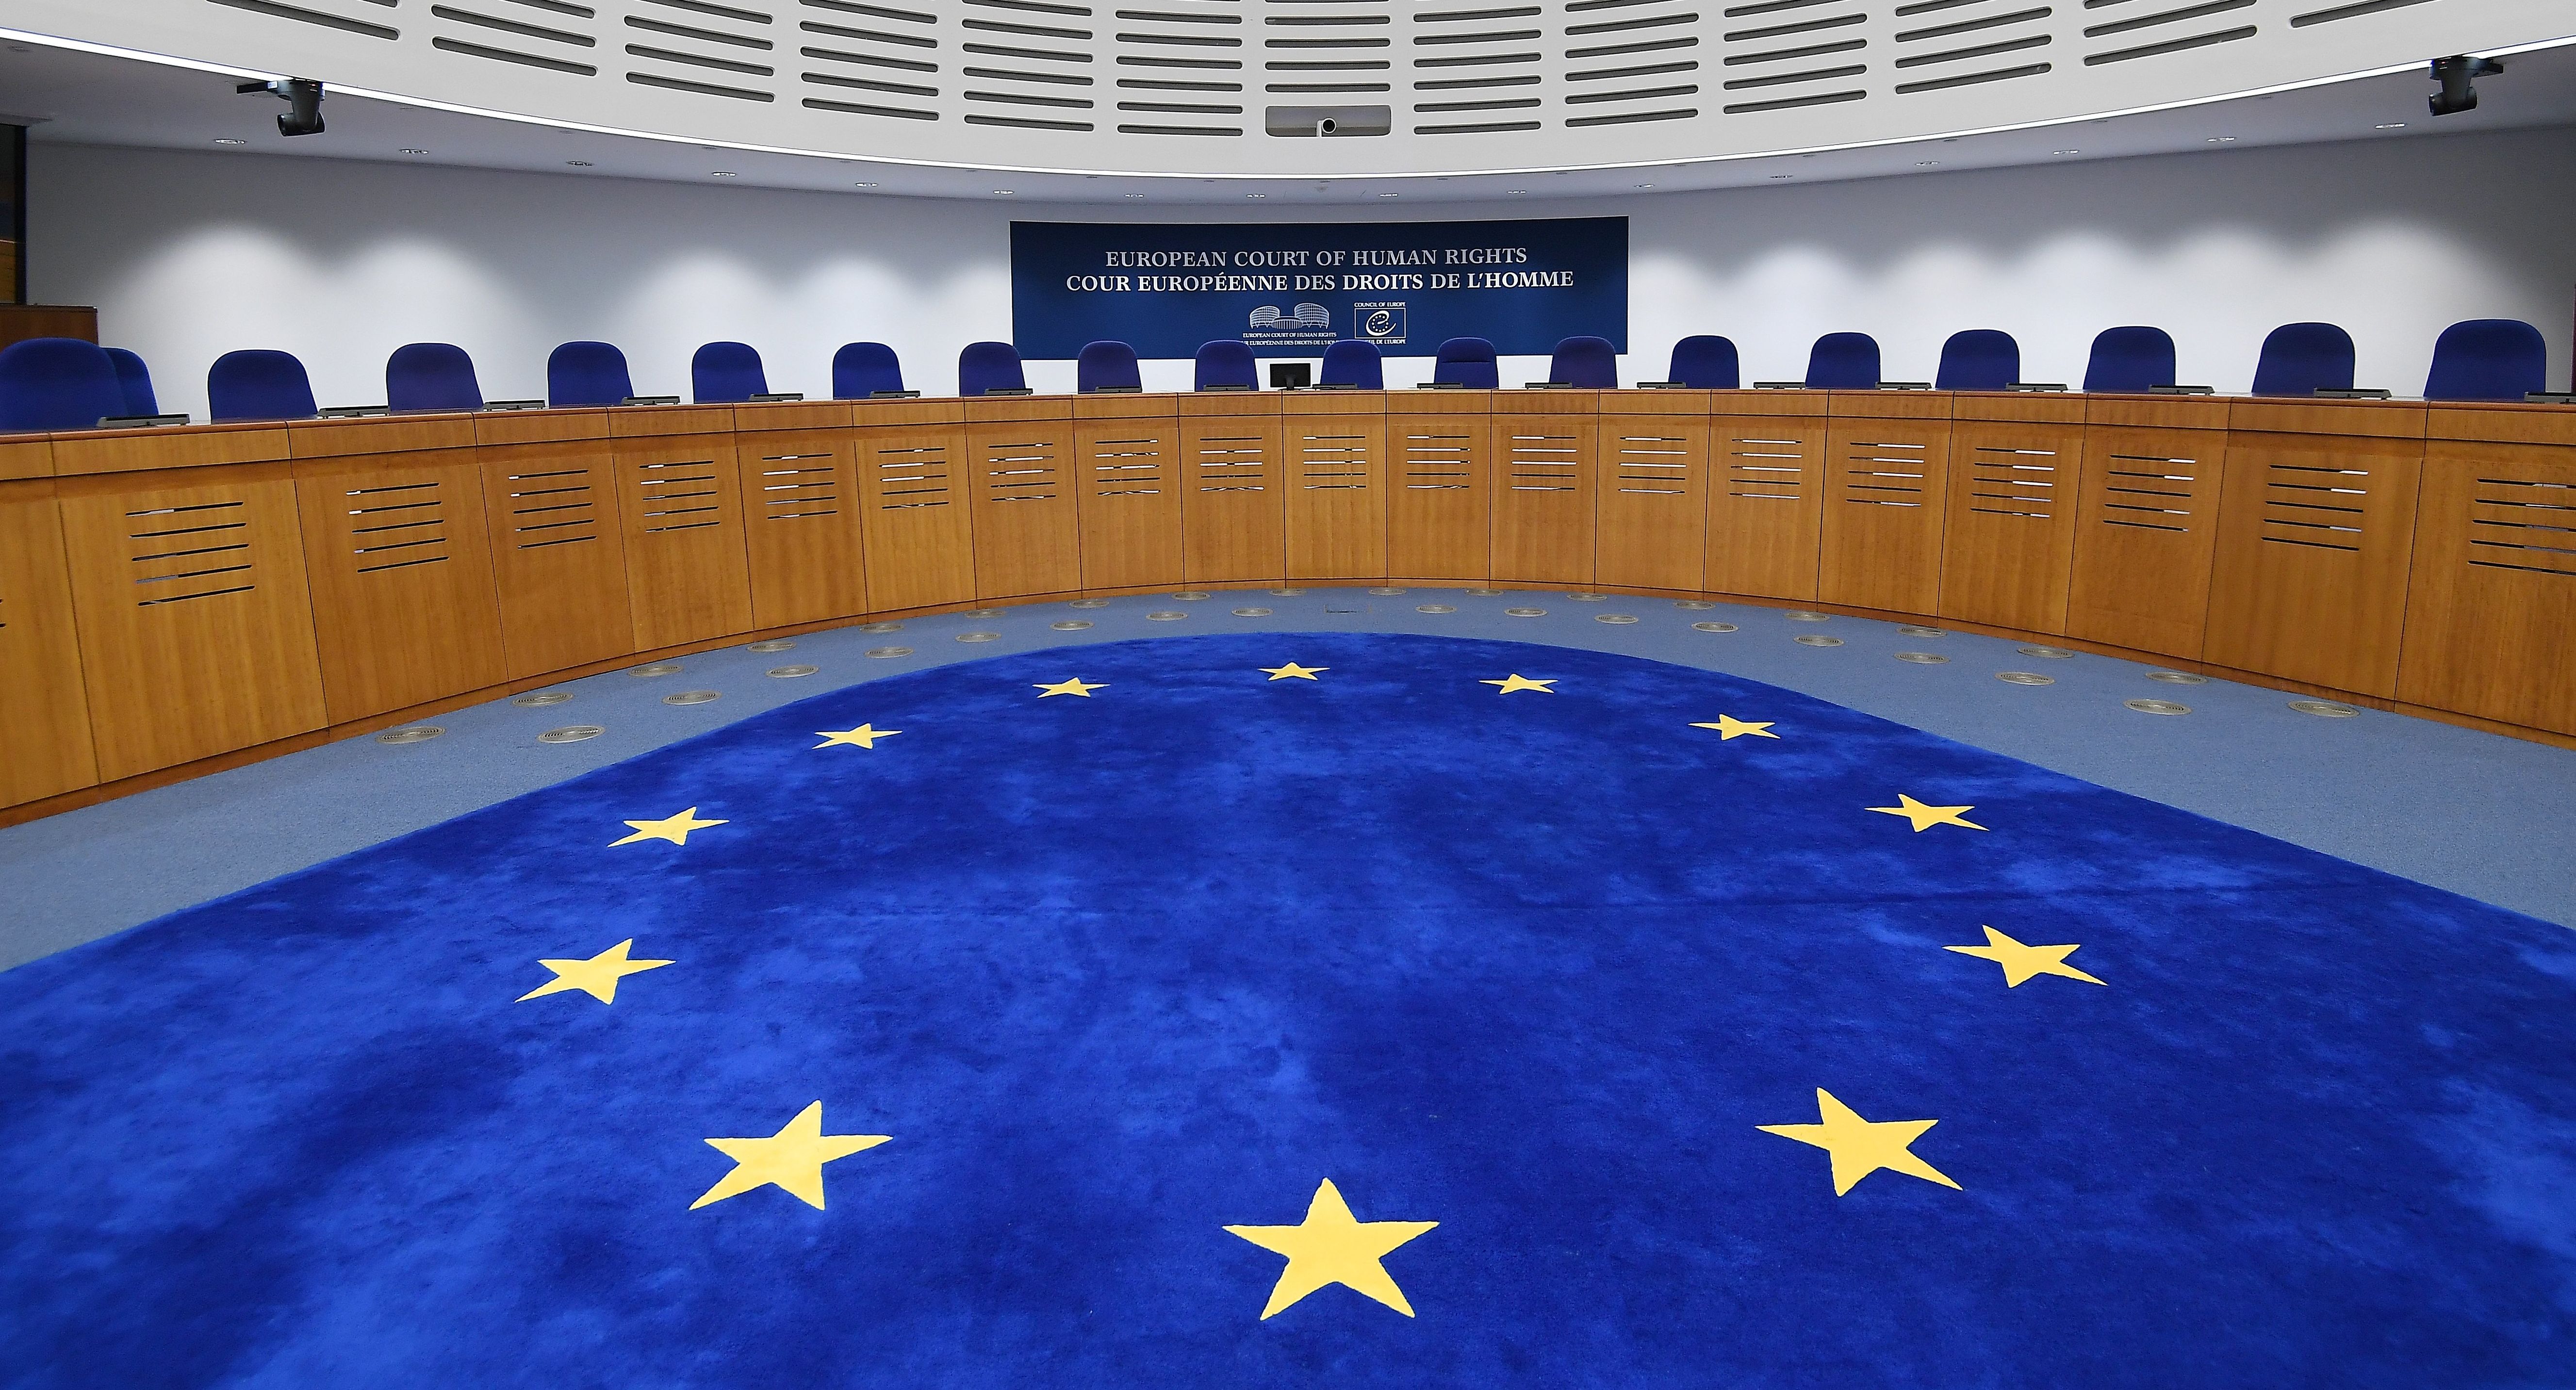 Зал заседаний Европейского суда по правам человека в Страсбурге